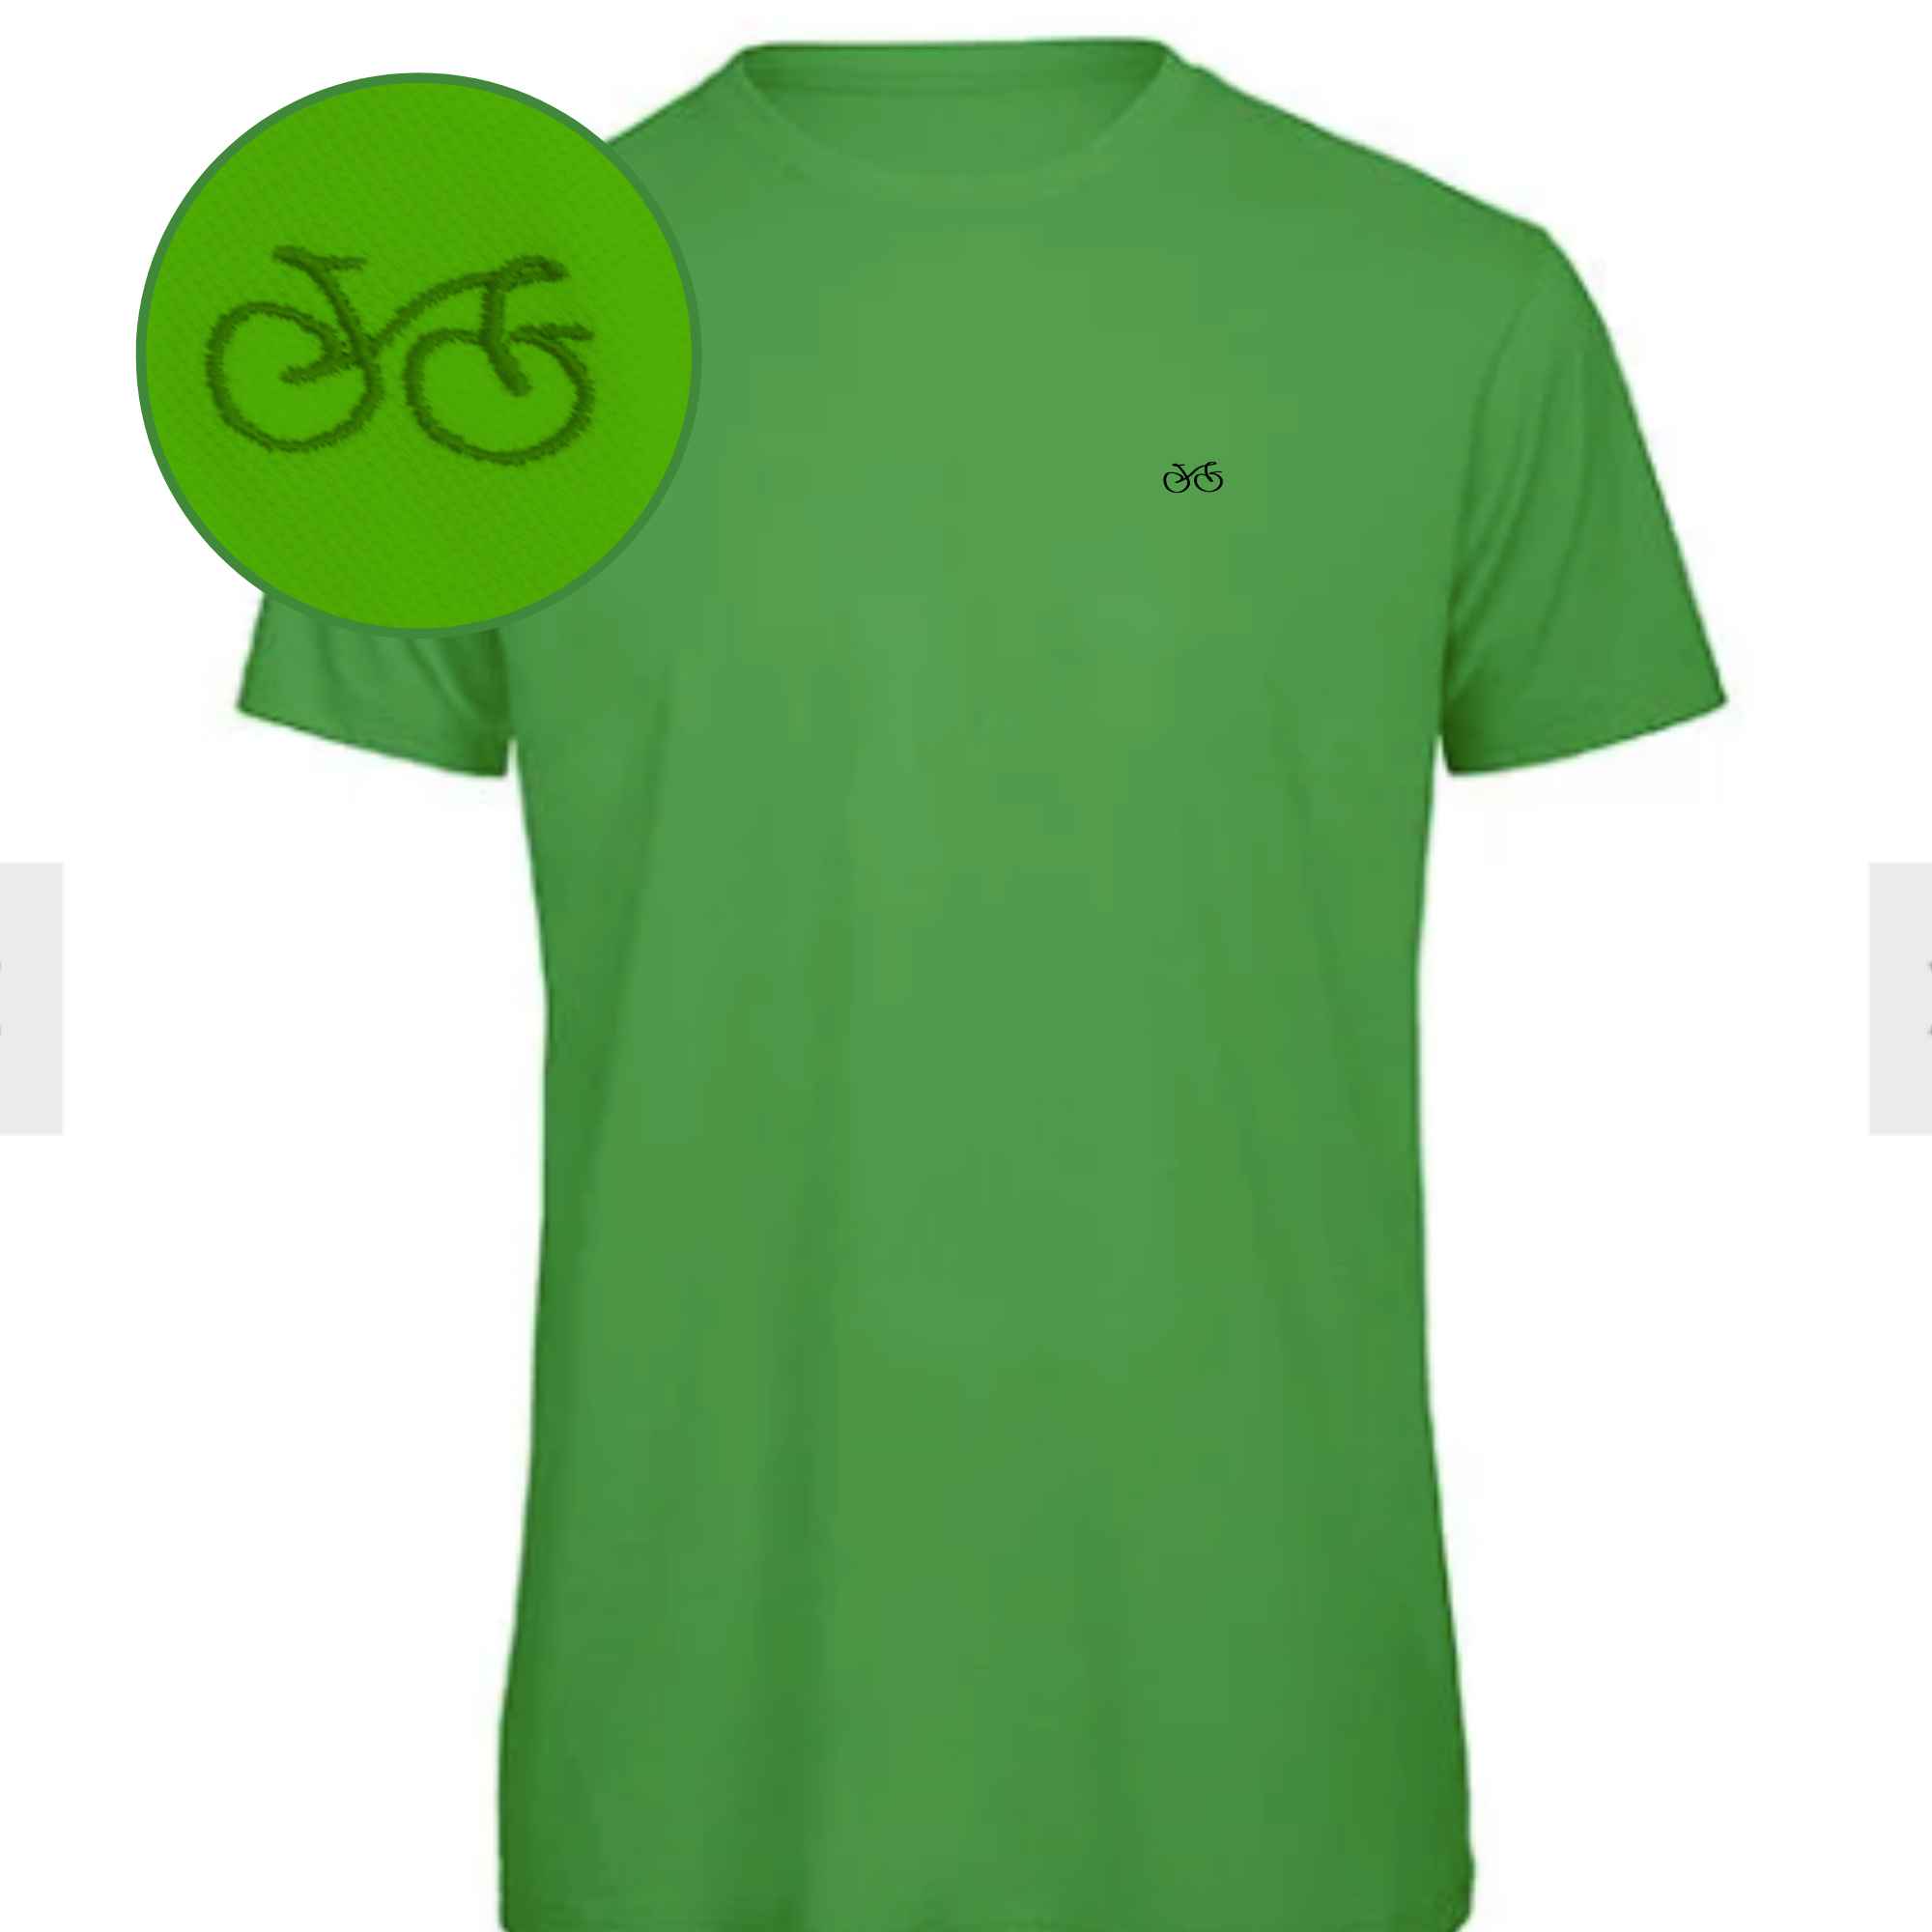 T-shirt in Grün mit fancy Fahrradmotiv bestickt für Herren